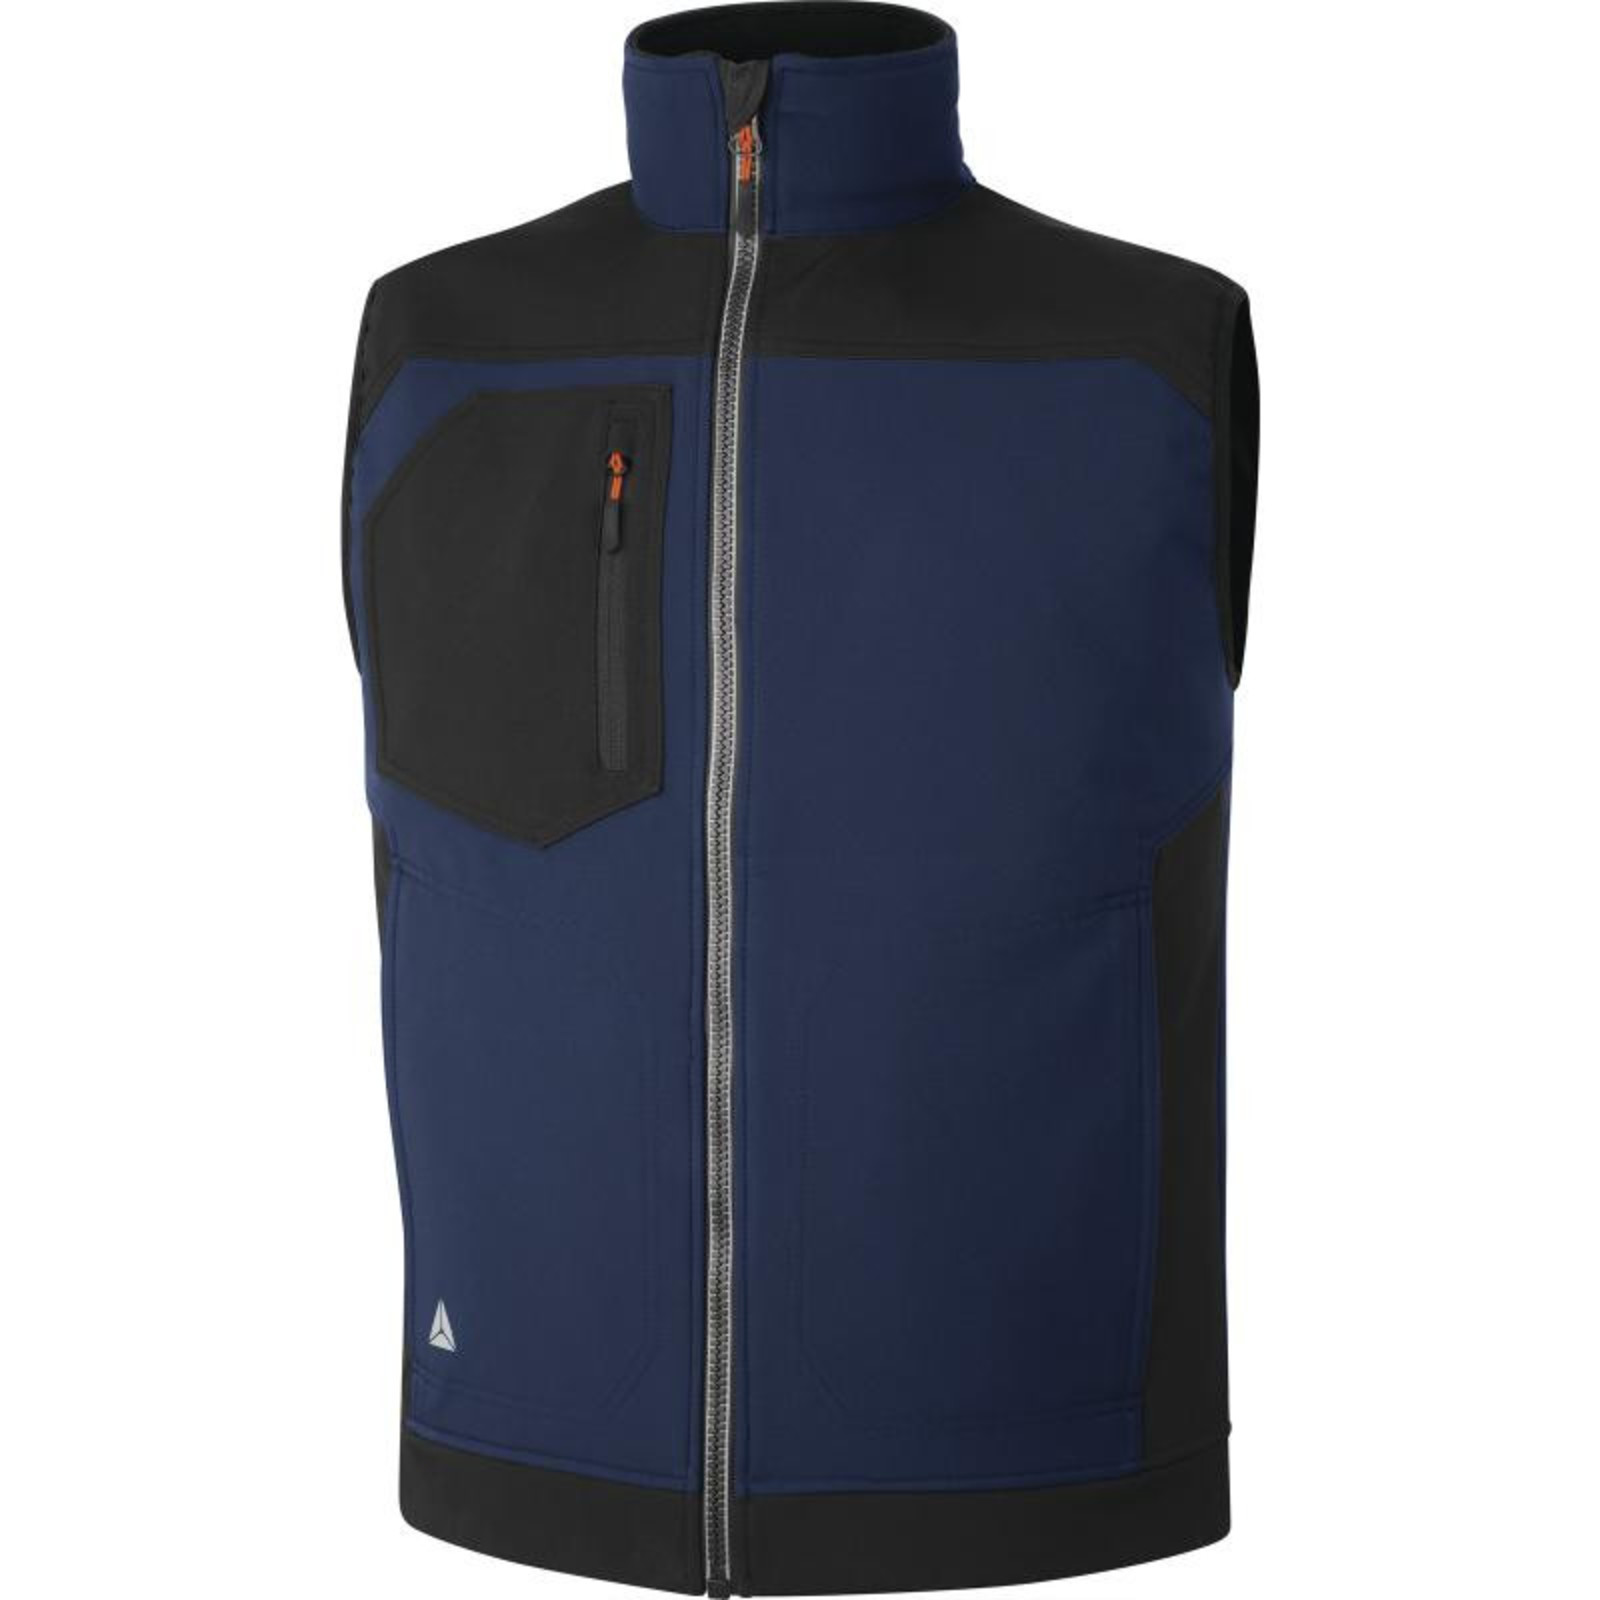 Softshellová vesta Delta Plus Holen - veľkosť: XL, farba: námornícka modrá/čierna